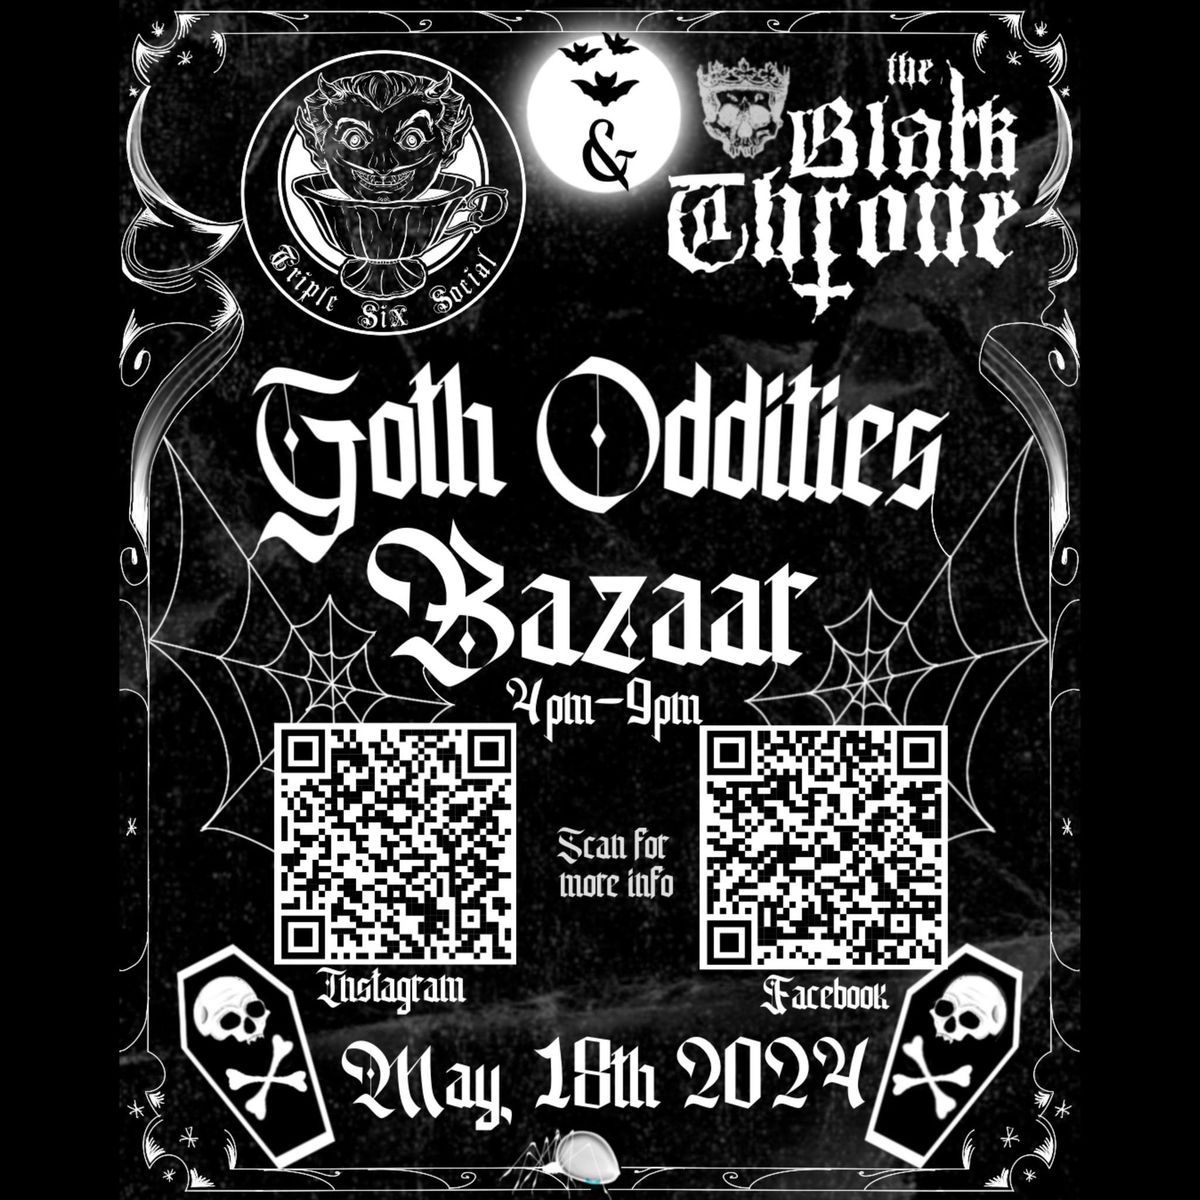 Goth Oddities Bazaar 